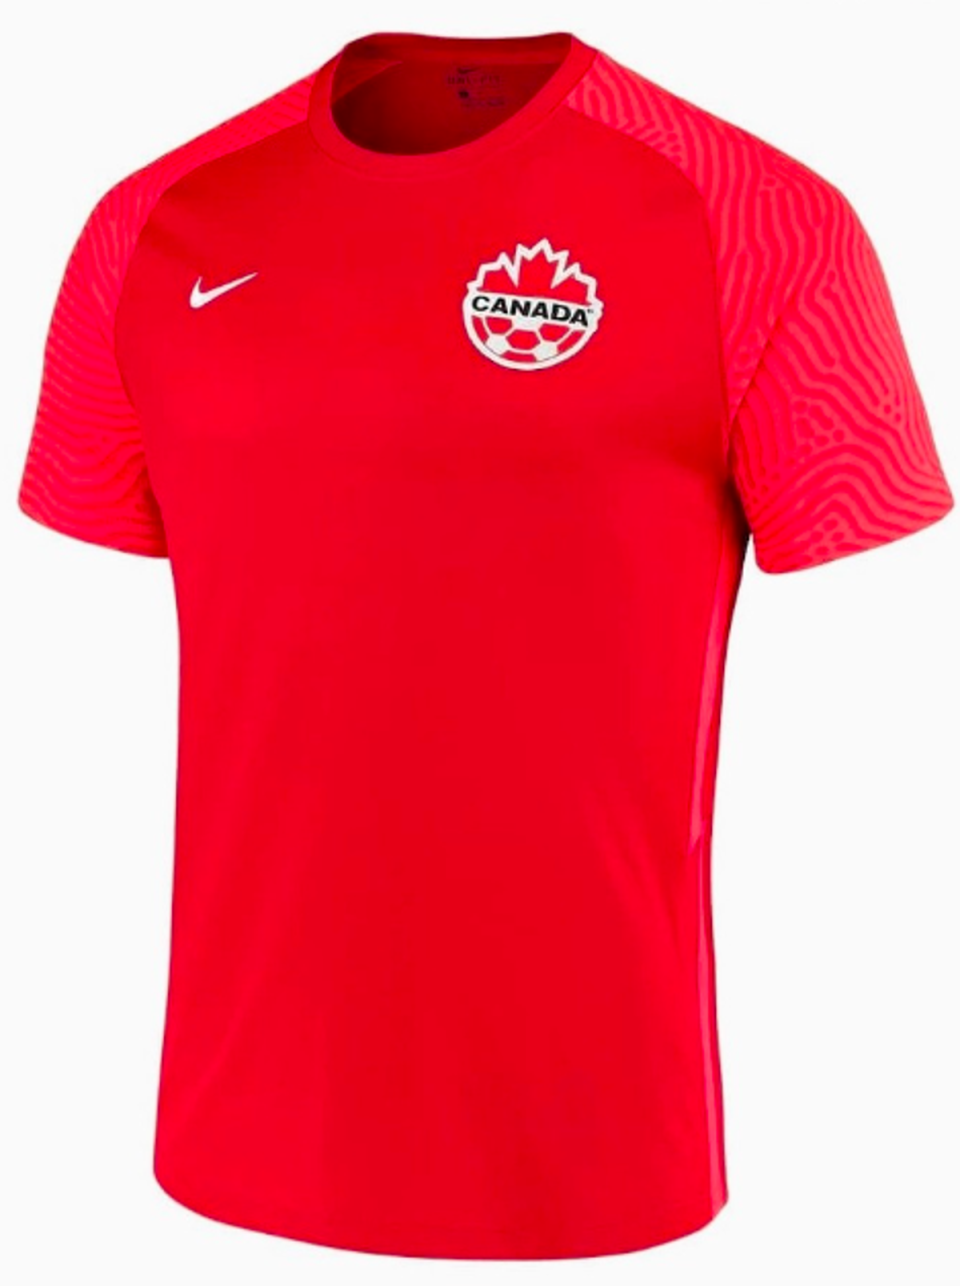 Canada home (Nike)